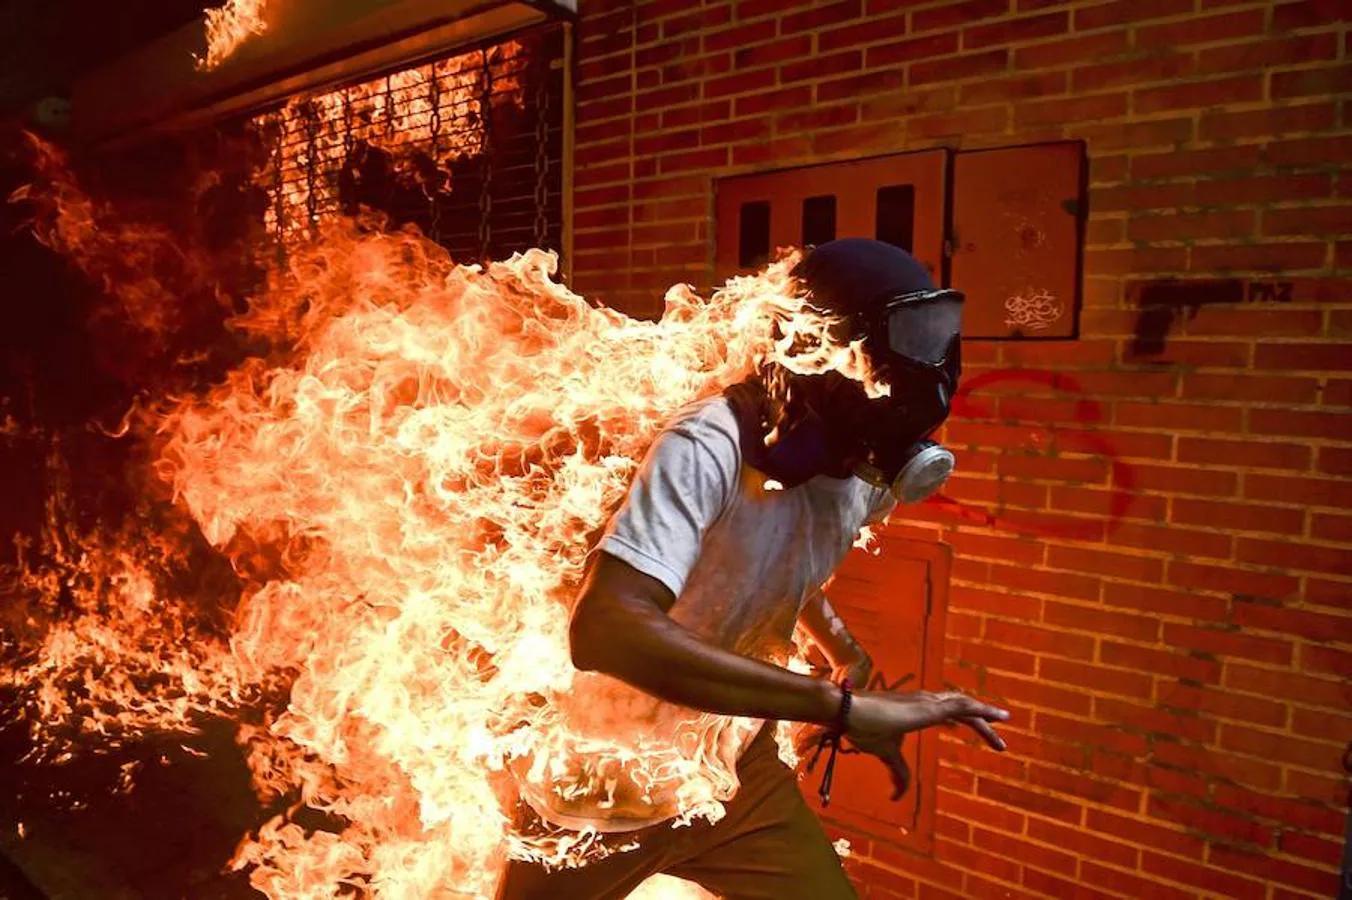 La imagen tomada por el fotógrafo Romaldo Schemidt de la agencia France Presse (AFP) el 3 de mayo de 2017 que muestra a un manifestante en llamas durante unos enfrentamientos con la policía durante una protesta en contra del presidente venezolano, Nicolás Maduro, en Caracas (Venezuela). 